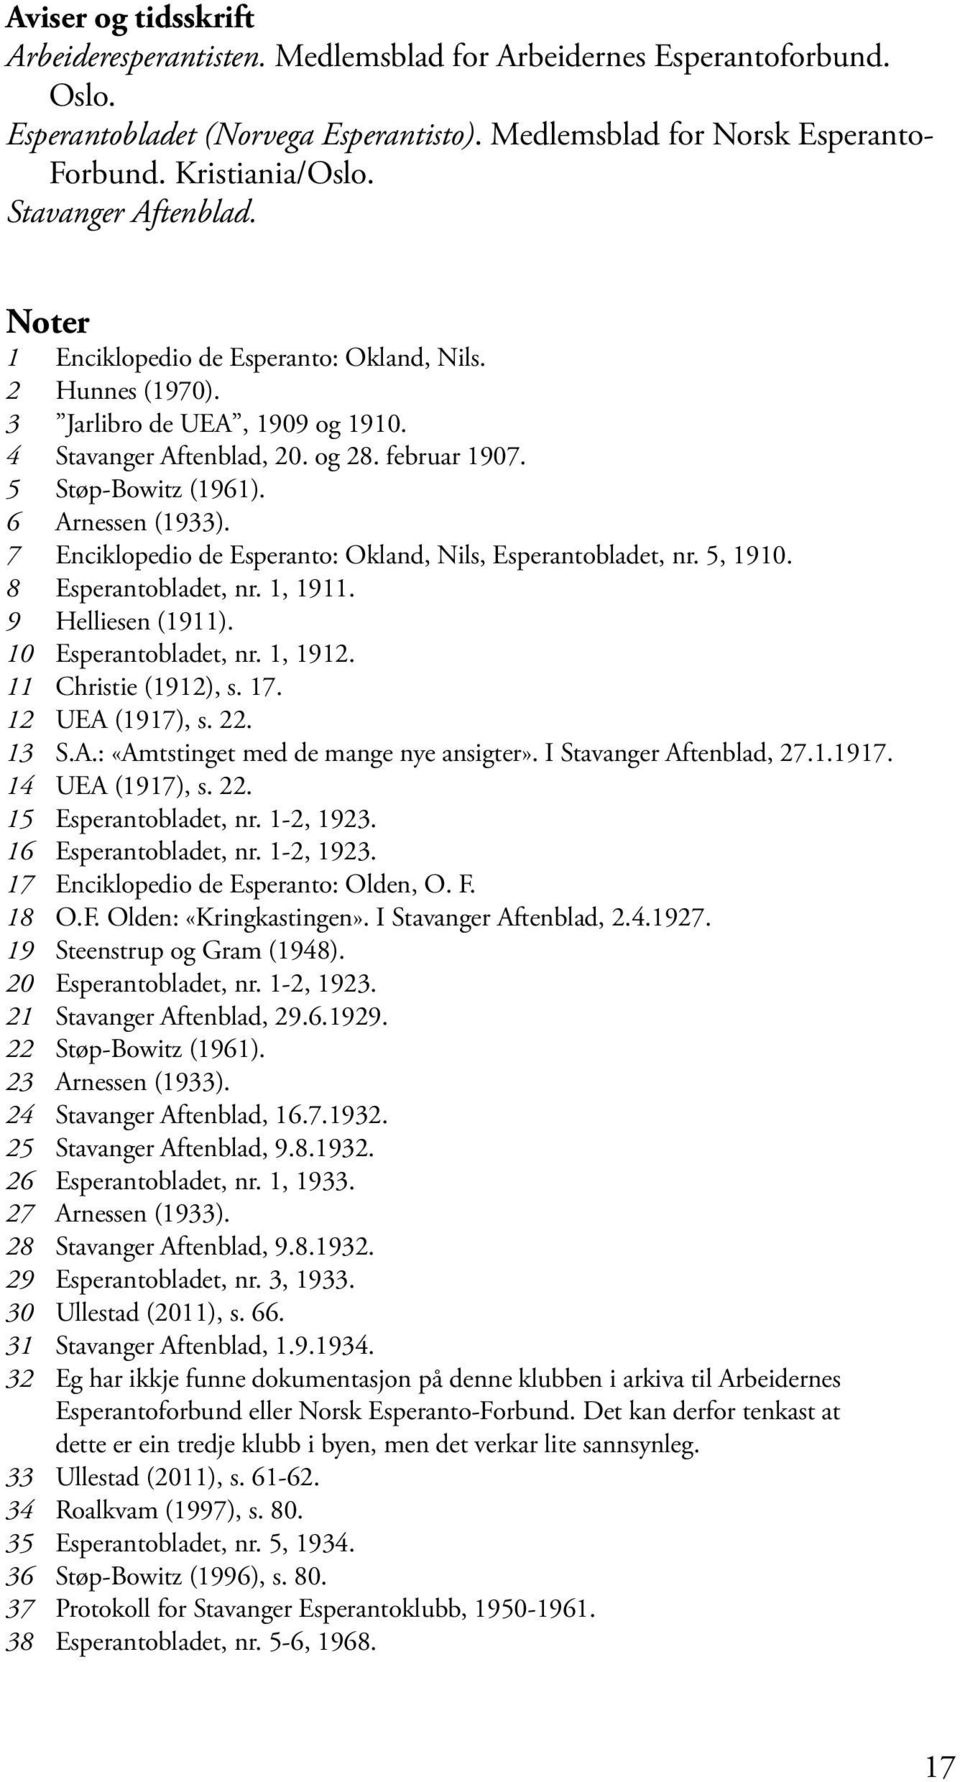 6 Arnessen (1933). 7 Enciklopedio de Esperanto: Okland, Nils, Esperantobladet, nr. 5, 1910. 8 Esperantobladet, nr. 1, 1911. 9 Helliesen (1911). 10 Esperantobladet, nr. 1, 1912. 11 Christie (1912), s.